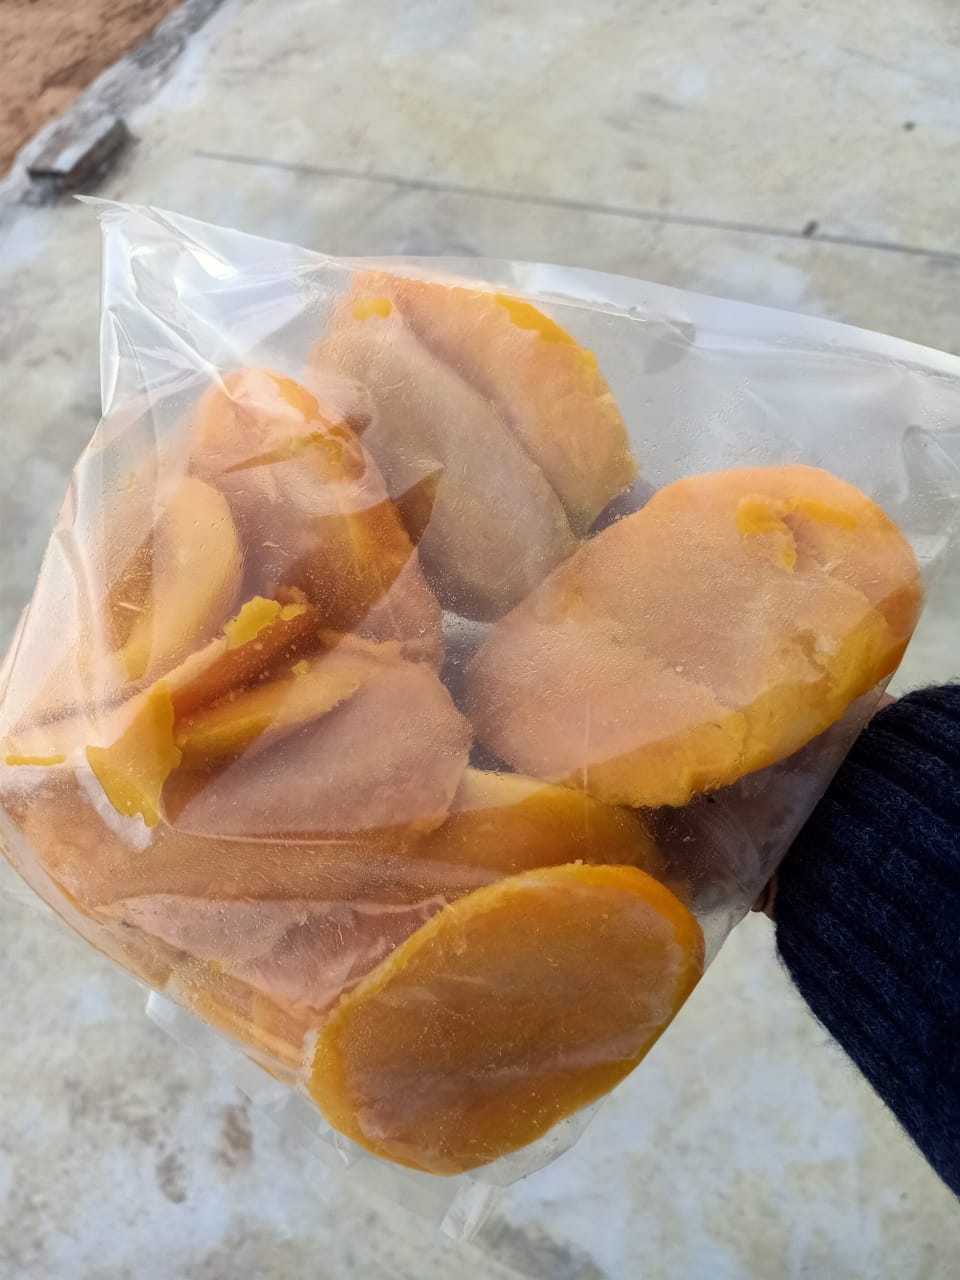 import frozen mango slices export frozen mango slices استيراد مانجه شرائح مجمده تصدير مانجه شرائح مجمدة